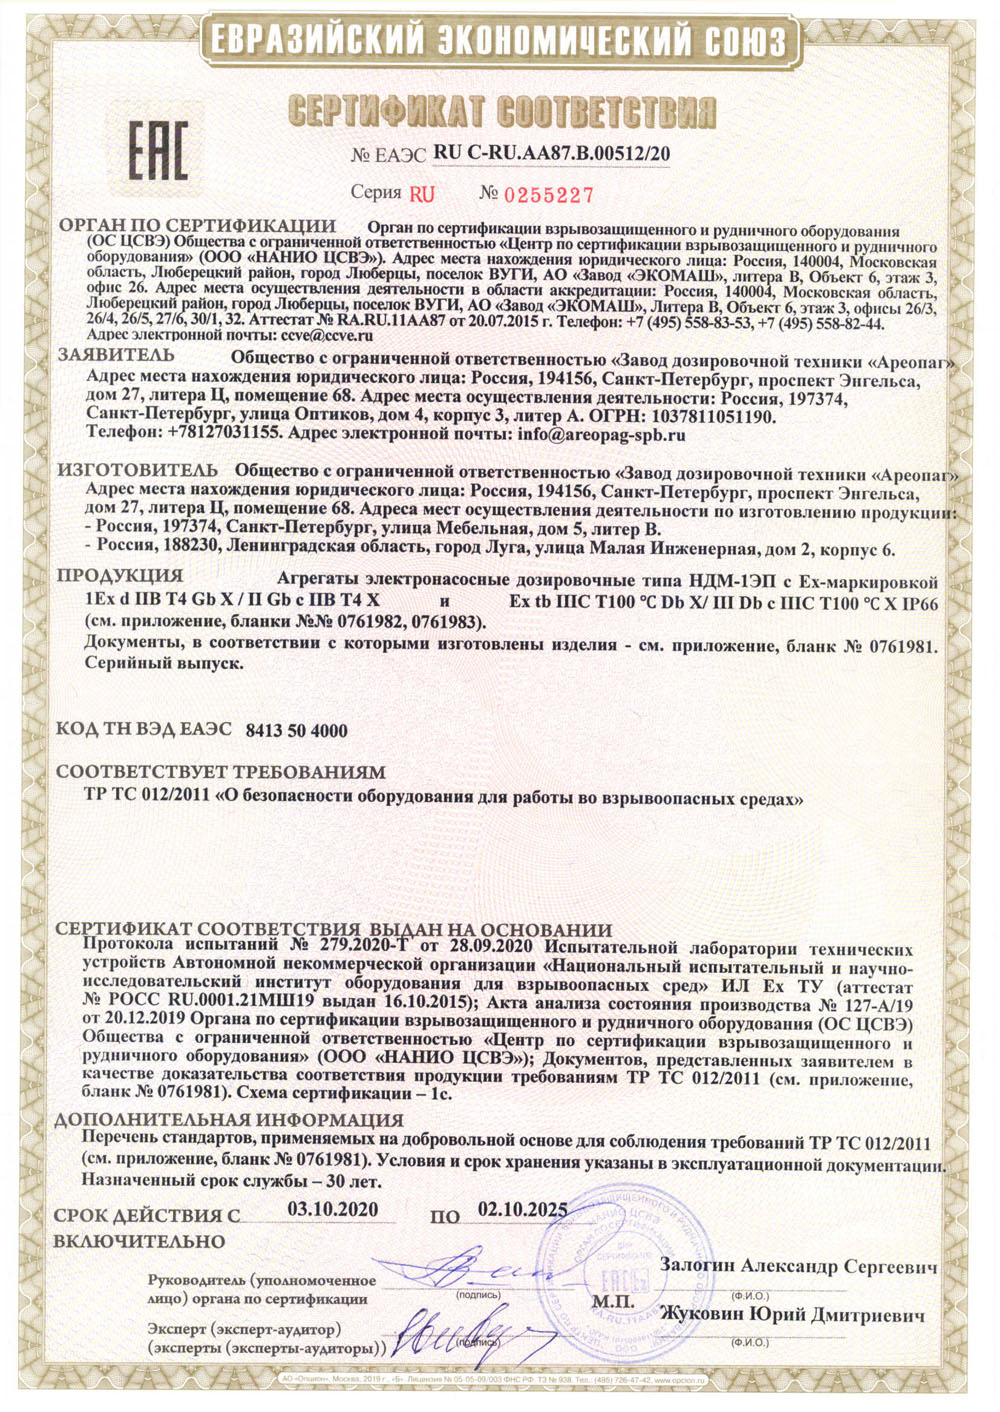 Сертификат соответствия ЕАЭС RU C-RU.AA87.В.00512/20 Агрегаты электронасосные дозировочные типа НДМ-1ЭП c EX-маркировкой